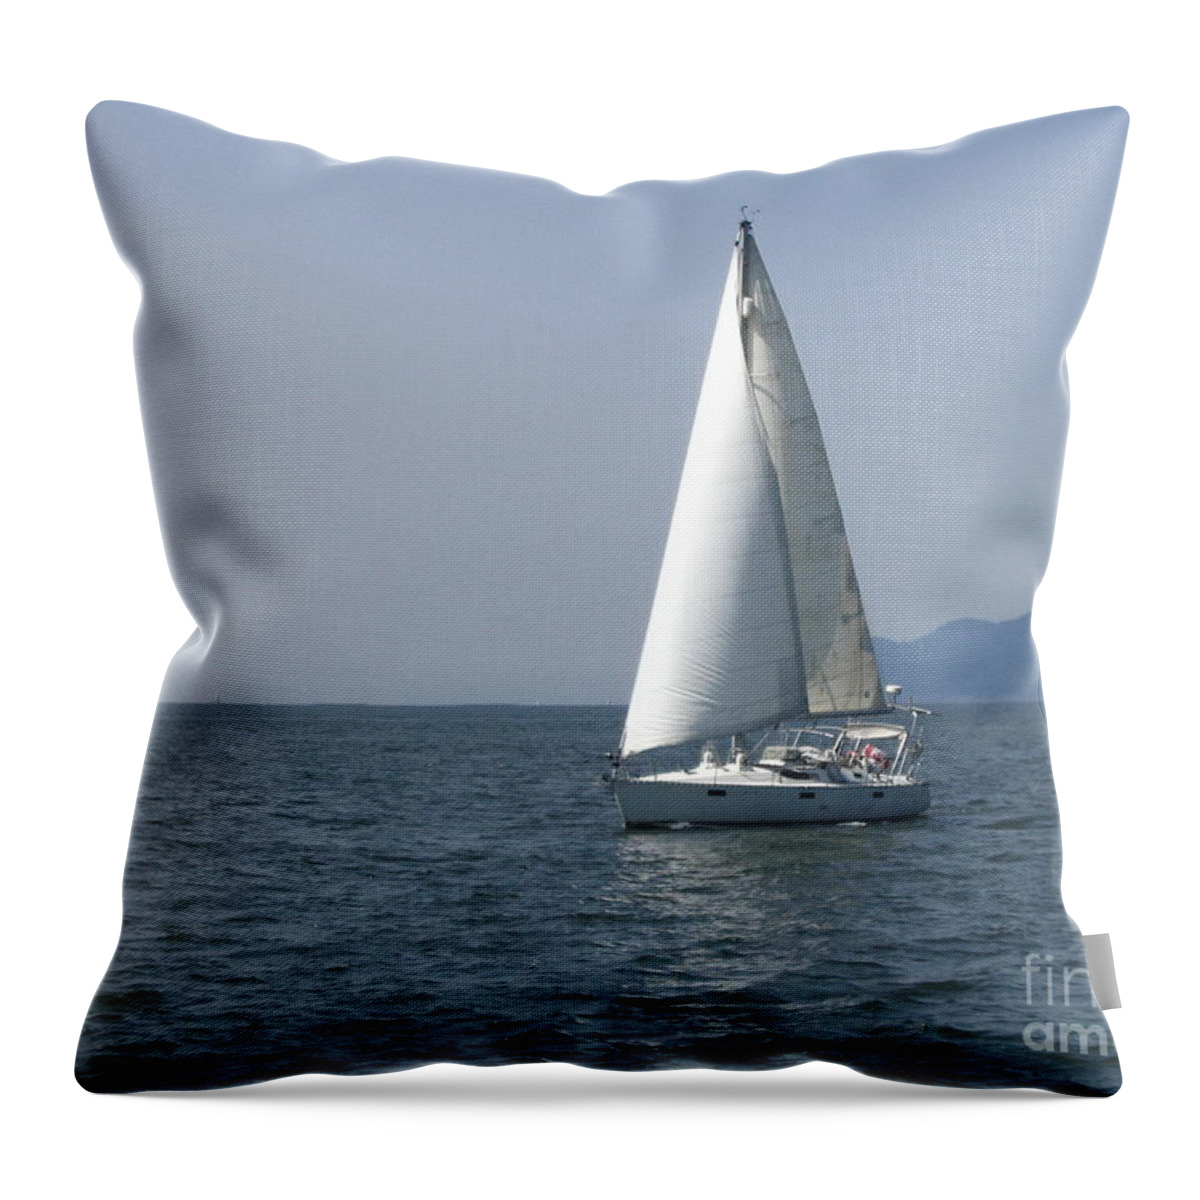 Sail Throw Pillow featuring the photograph Sailing Away by Vivian Martin